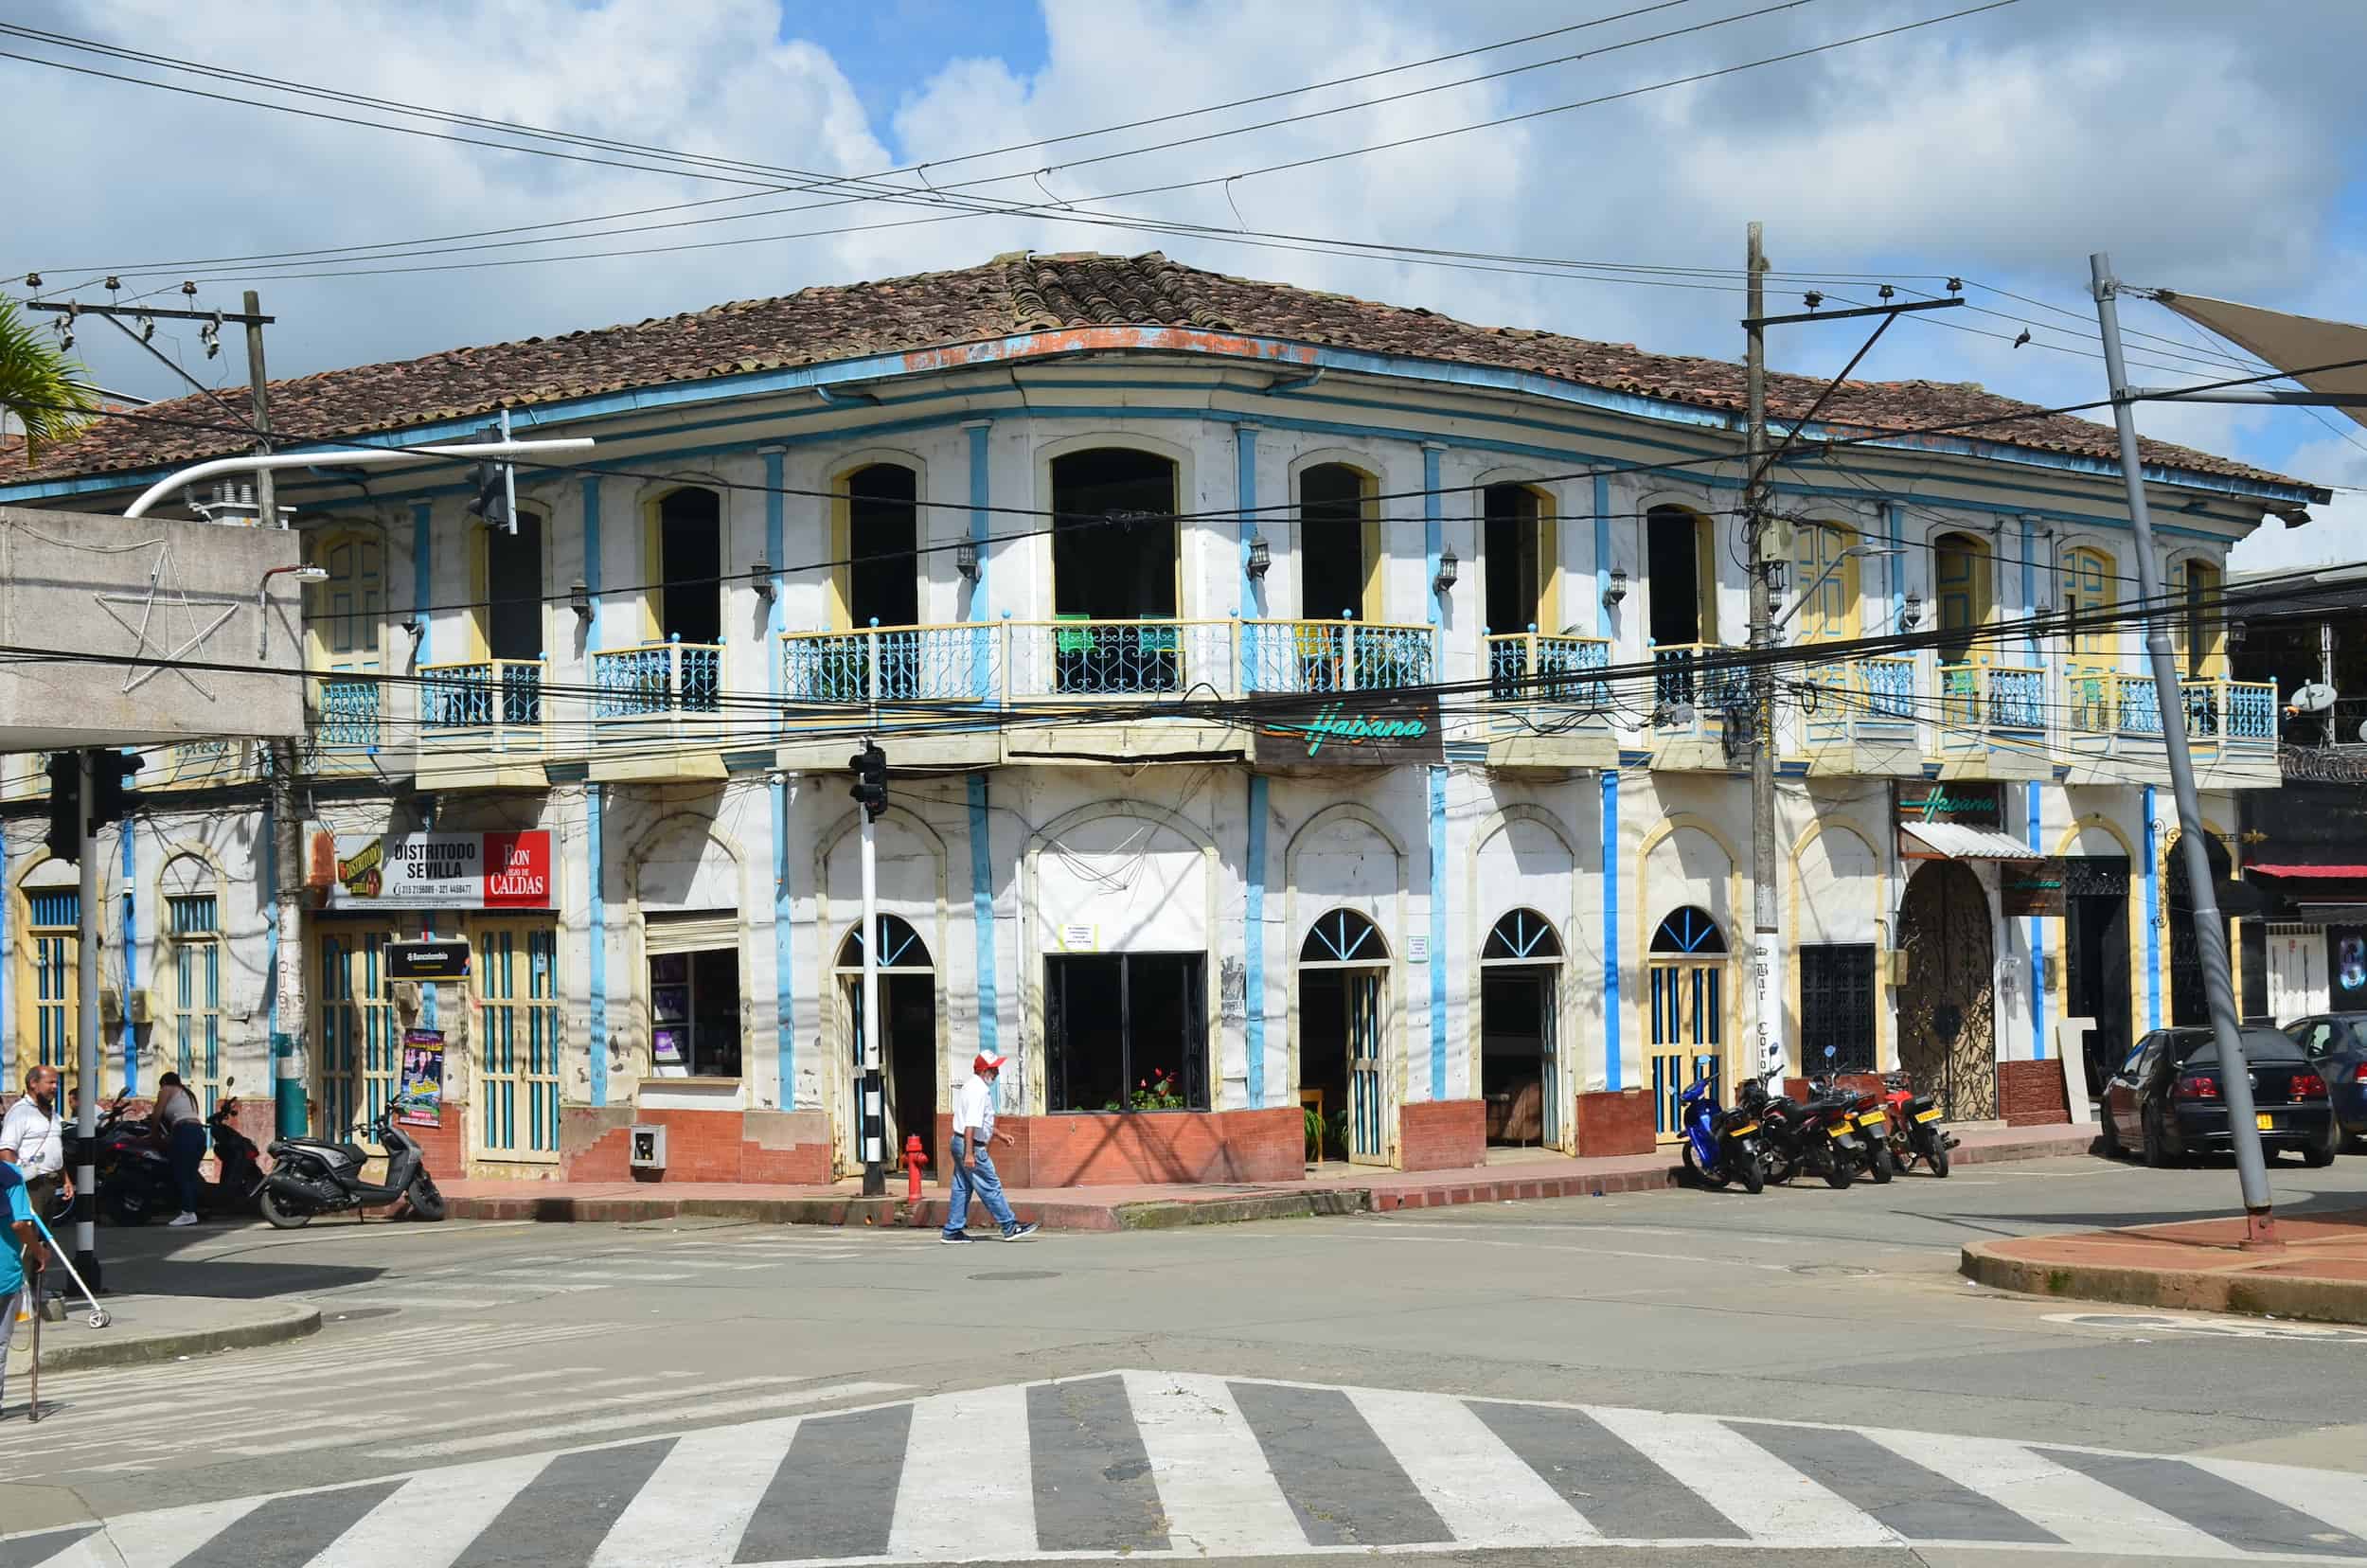 Building on Plaza de La Concordia in Sevilla, Valle del Cauca, Colombia